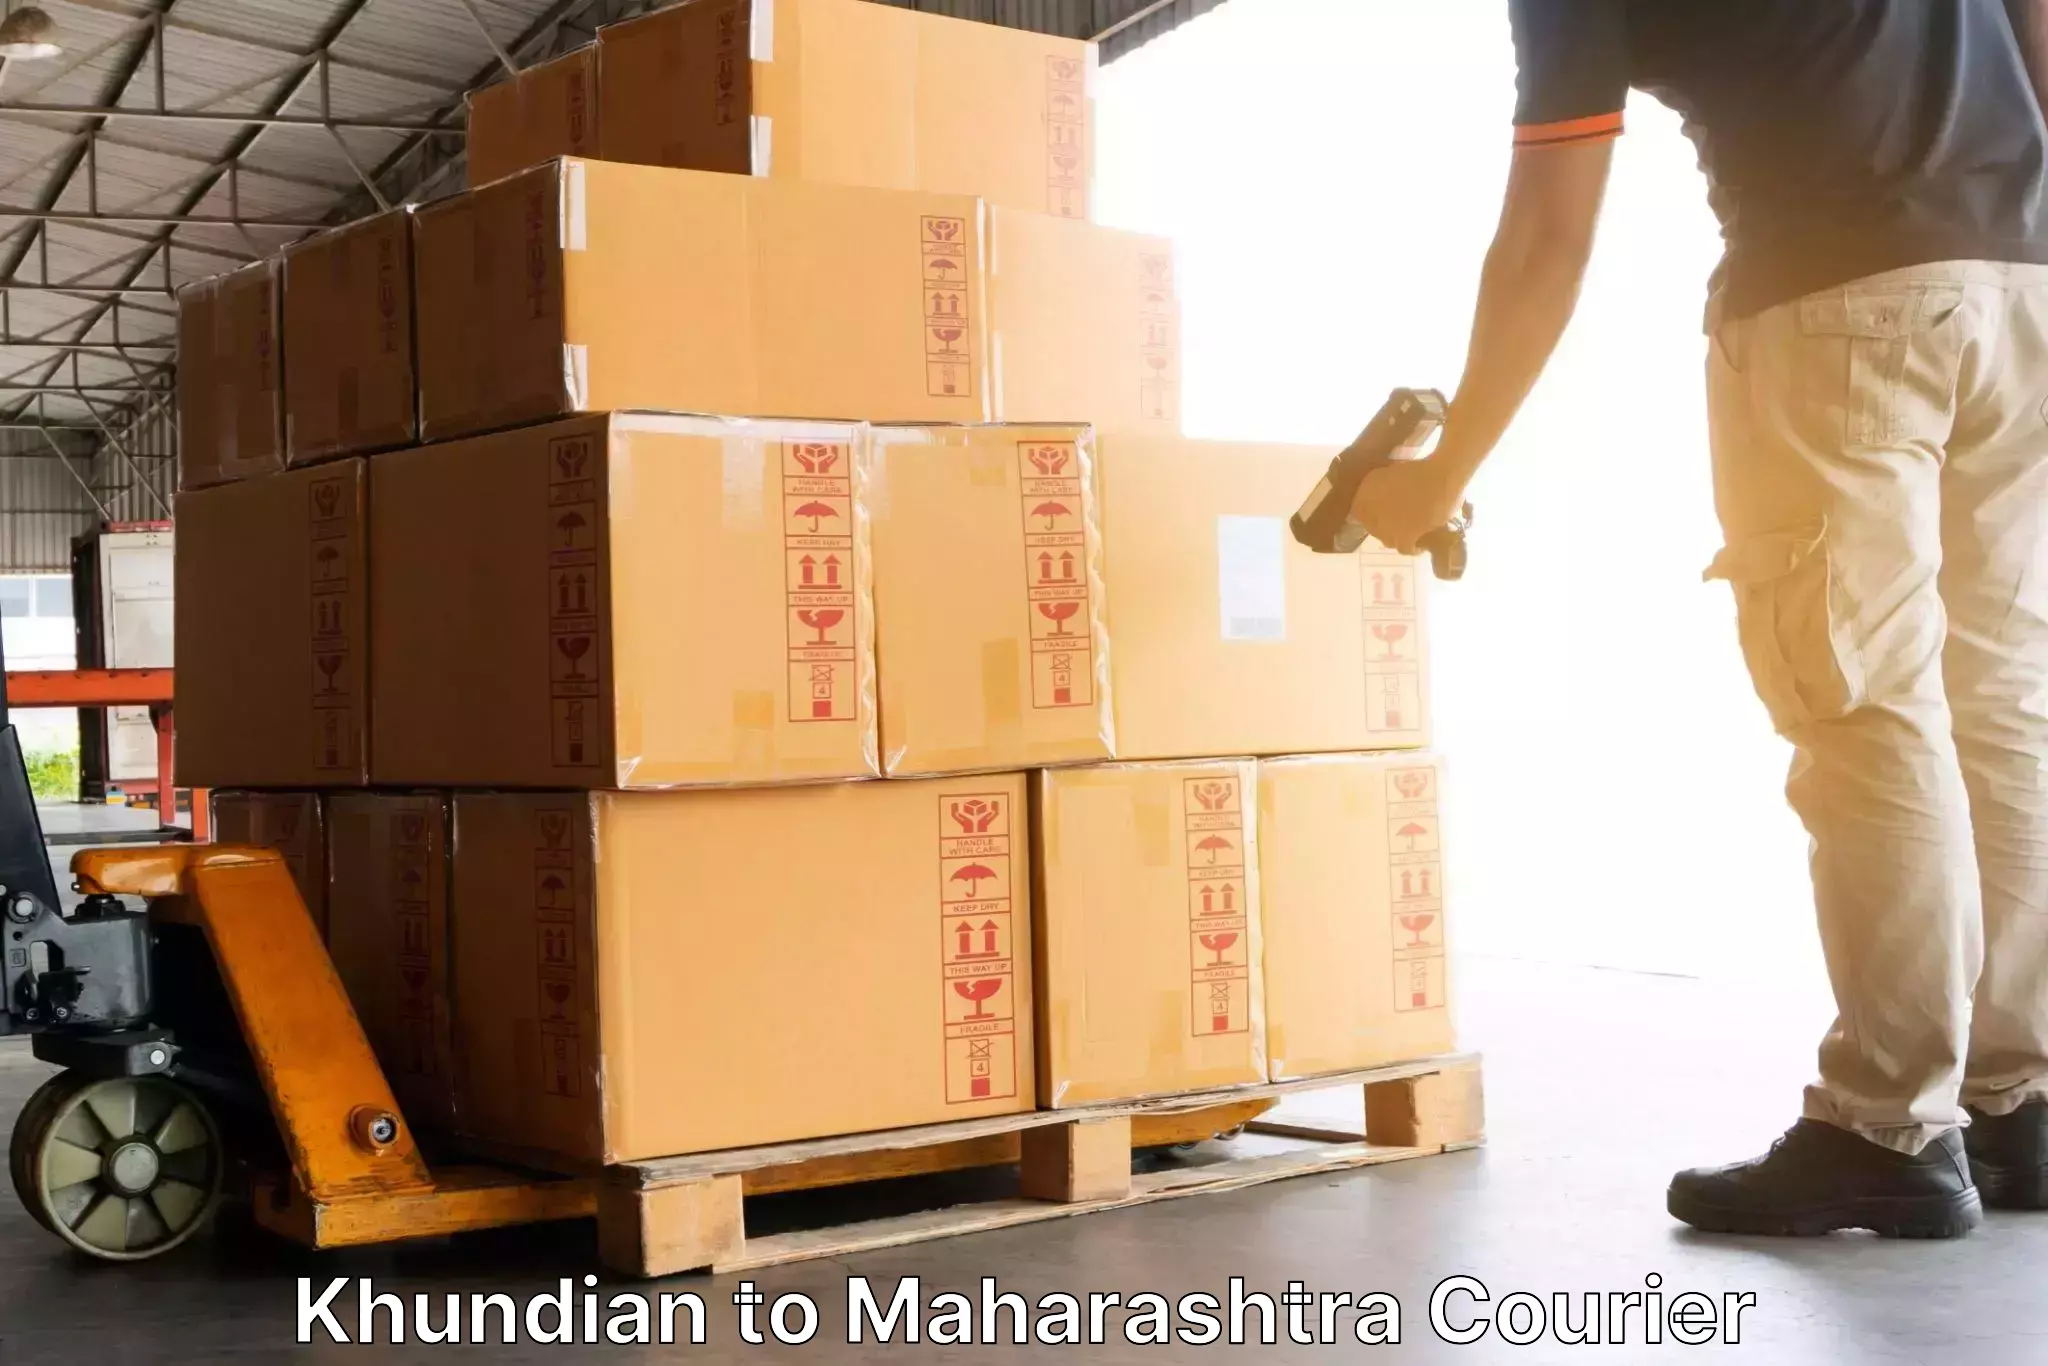 Tech-enabled shipping Khundian to Kalyan